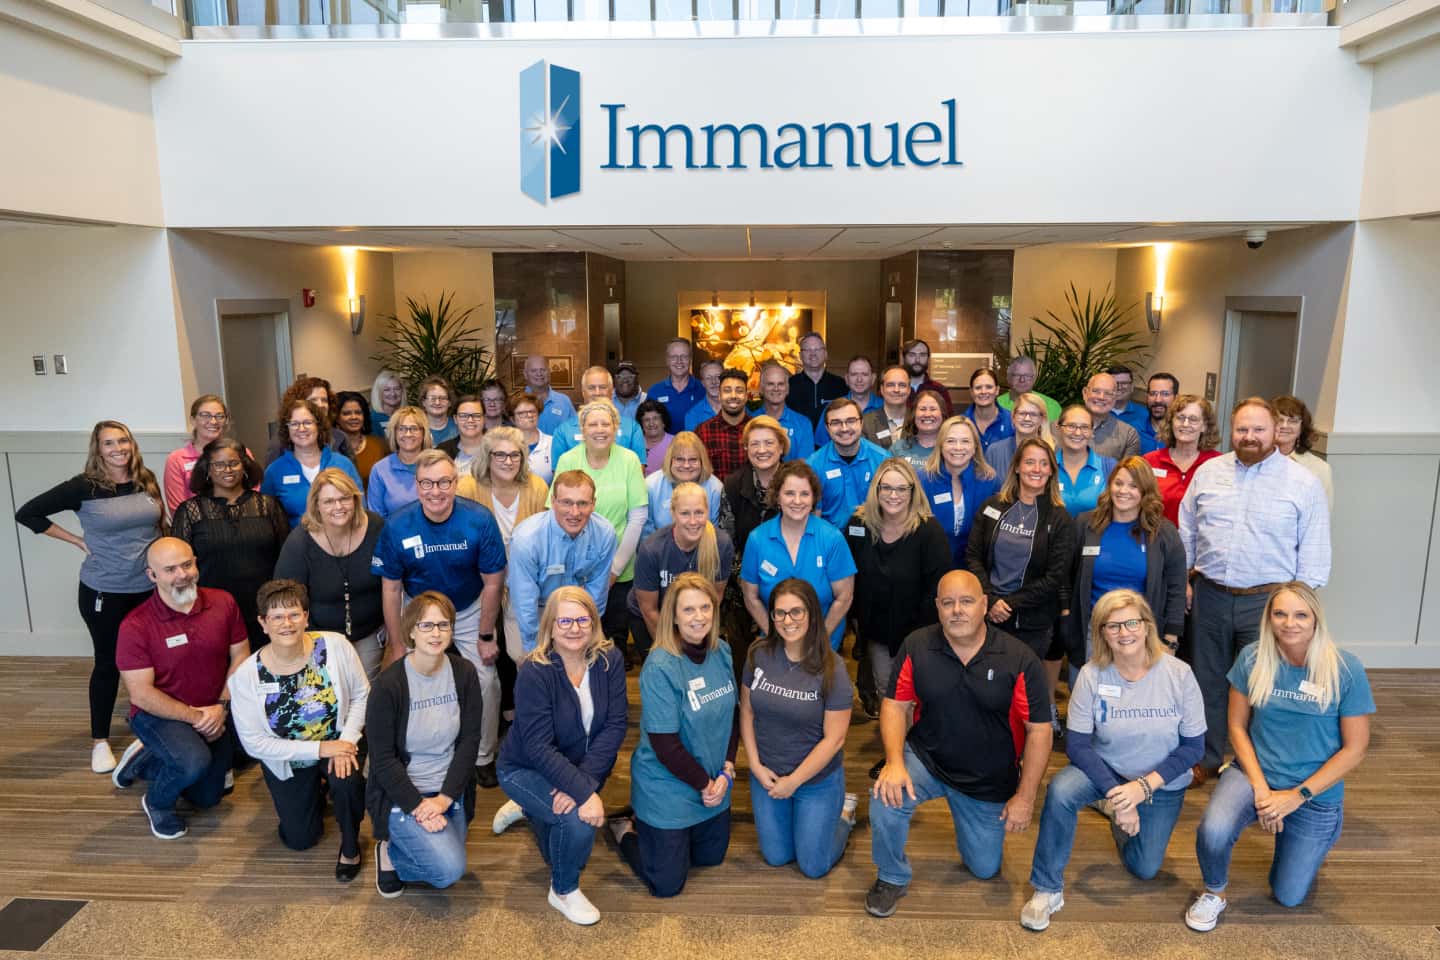 Large Immanuel team photo.